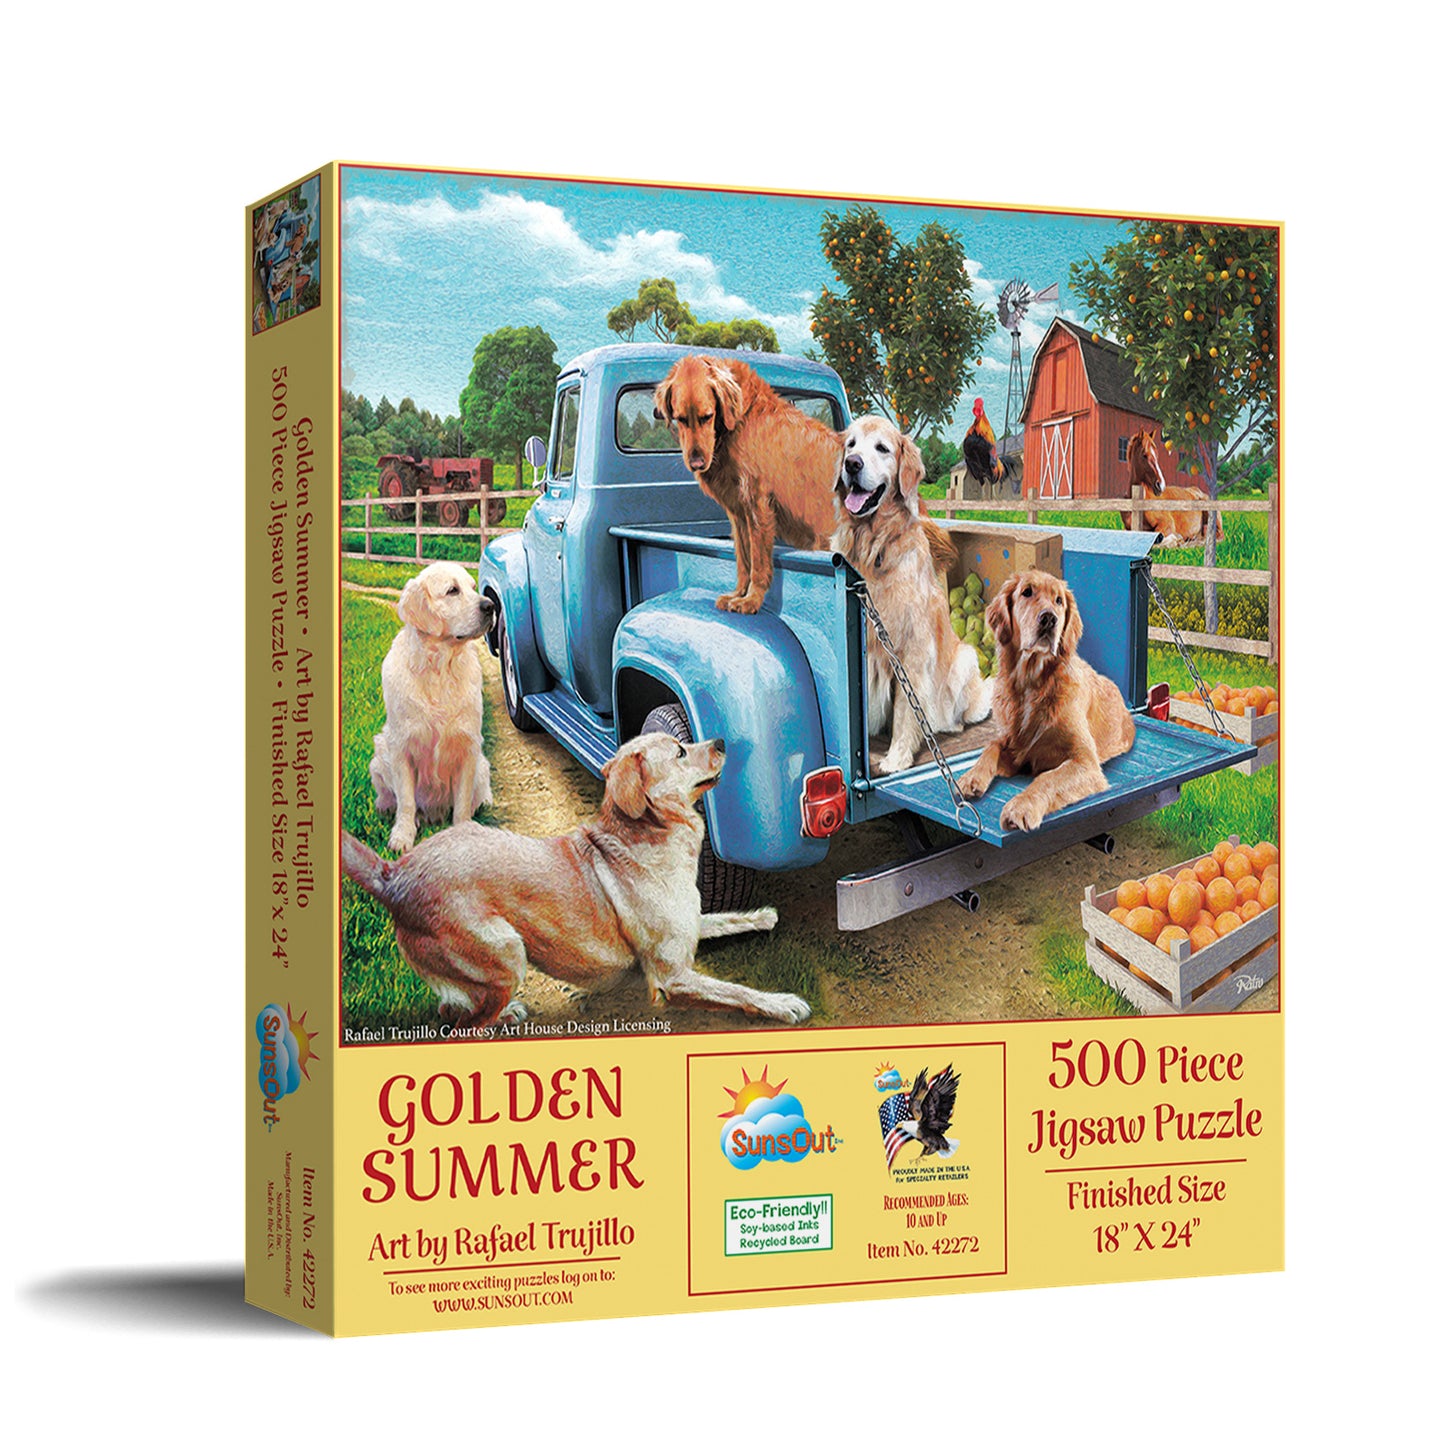 Golden Summer - 500 Piece Jigsaw Puzzle